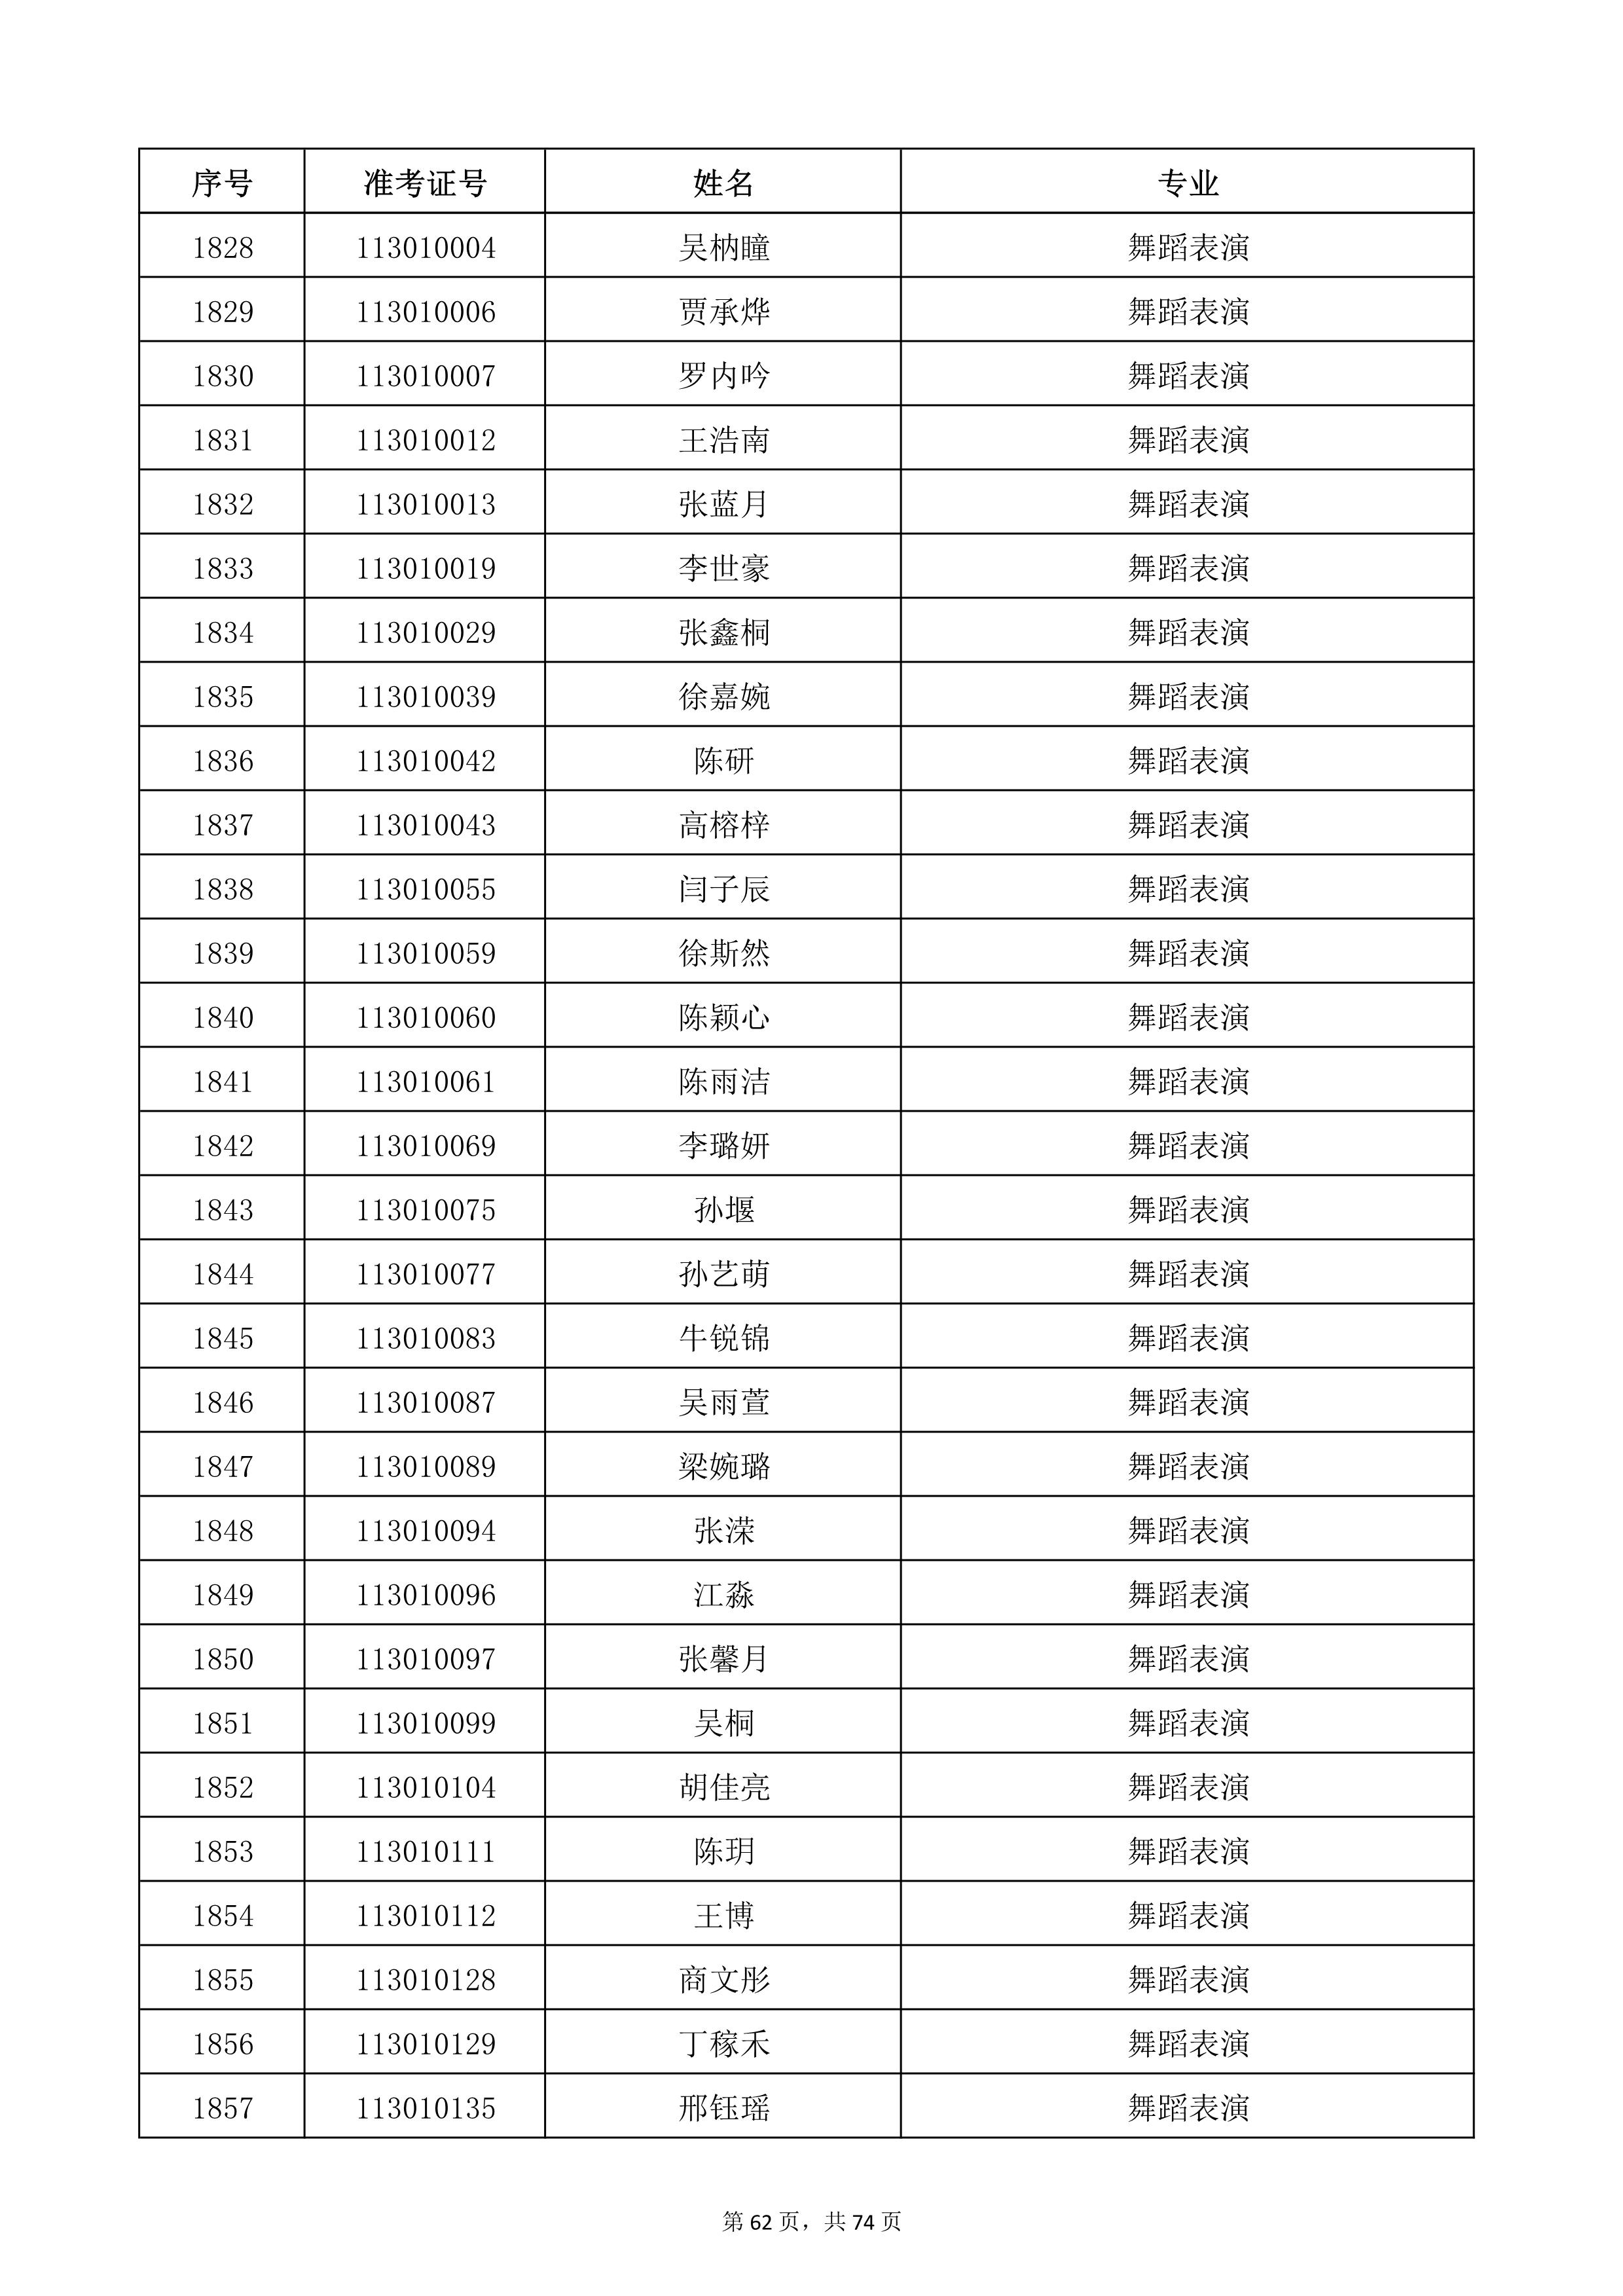 天津音乐学院2022年本科招生考试复试名单_62.jpg